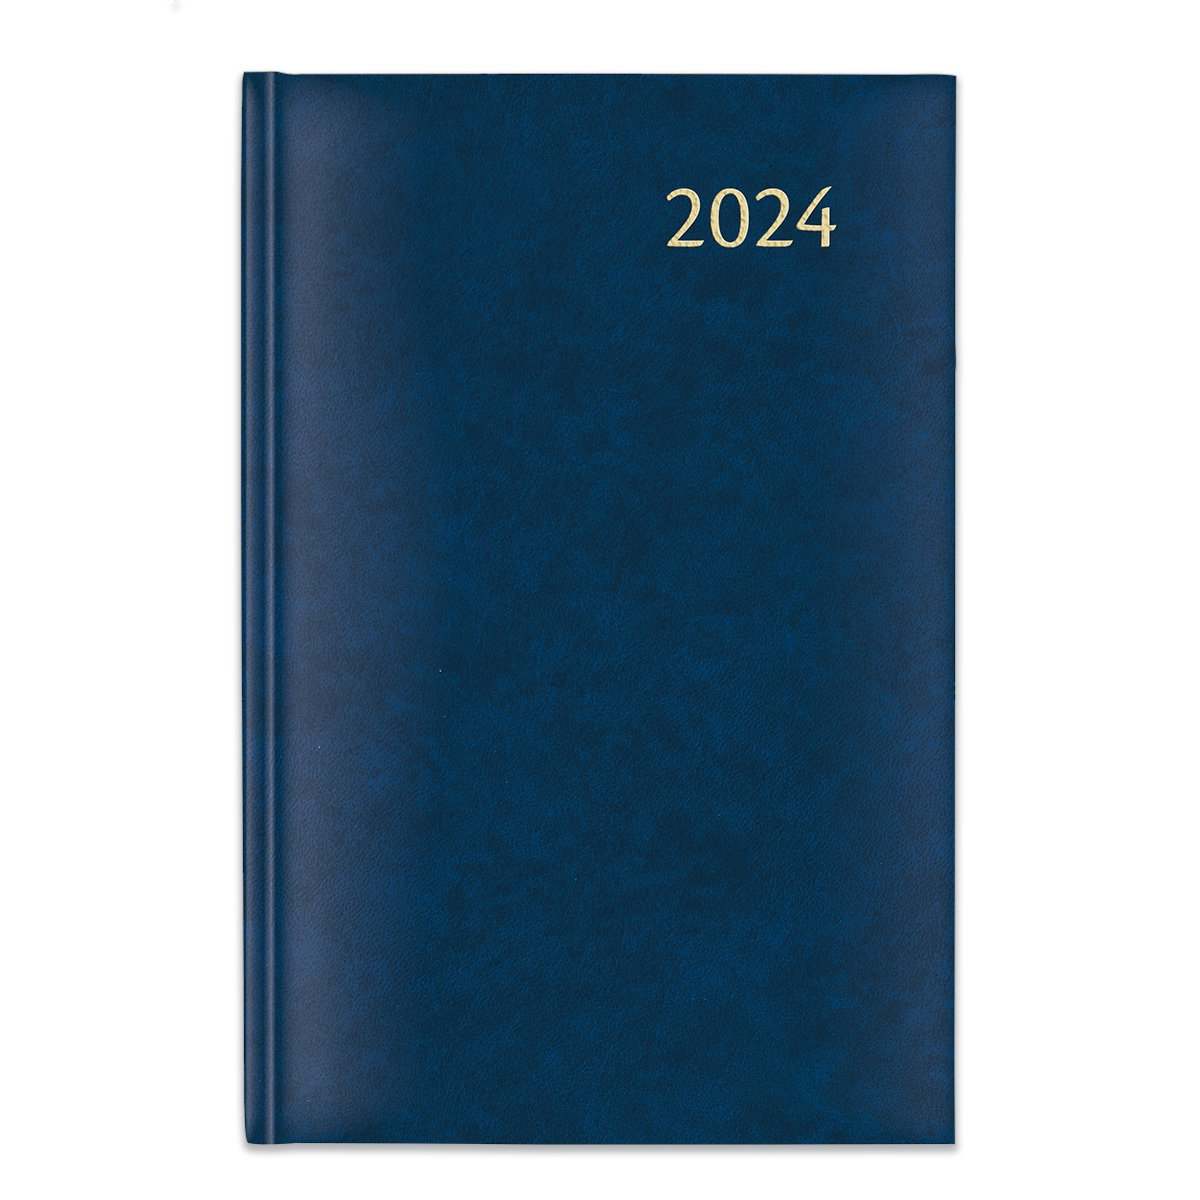 Agenda de Rendez-vous 2024 - Agenda Quotidien 1 Jour/Page - Hardcover A4 -  21x29cm 